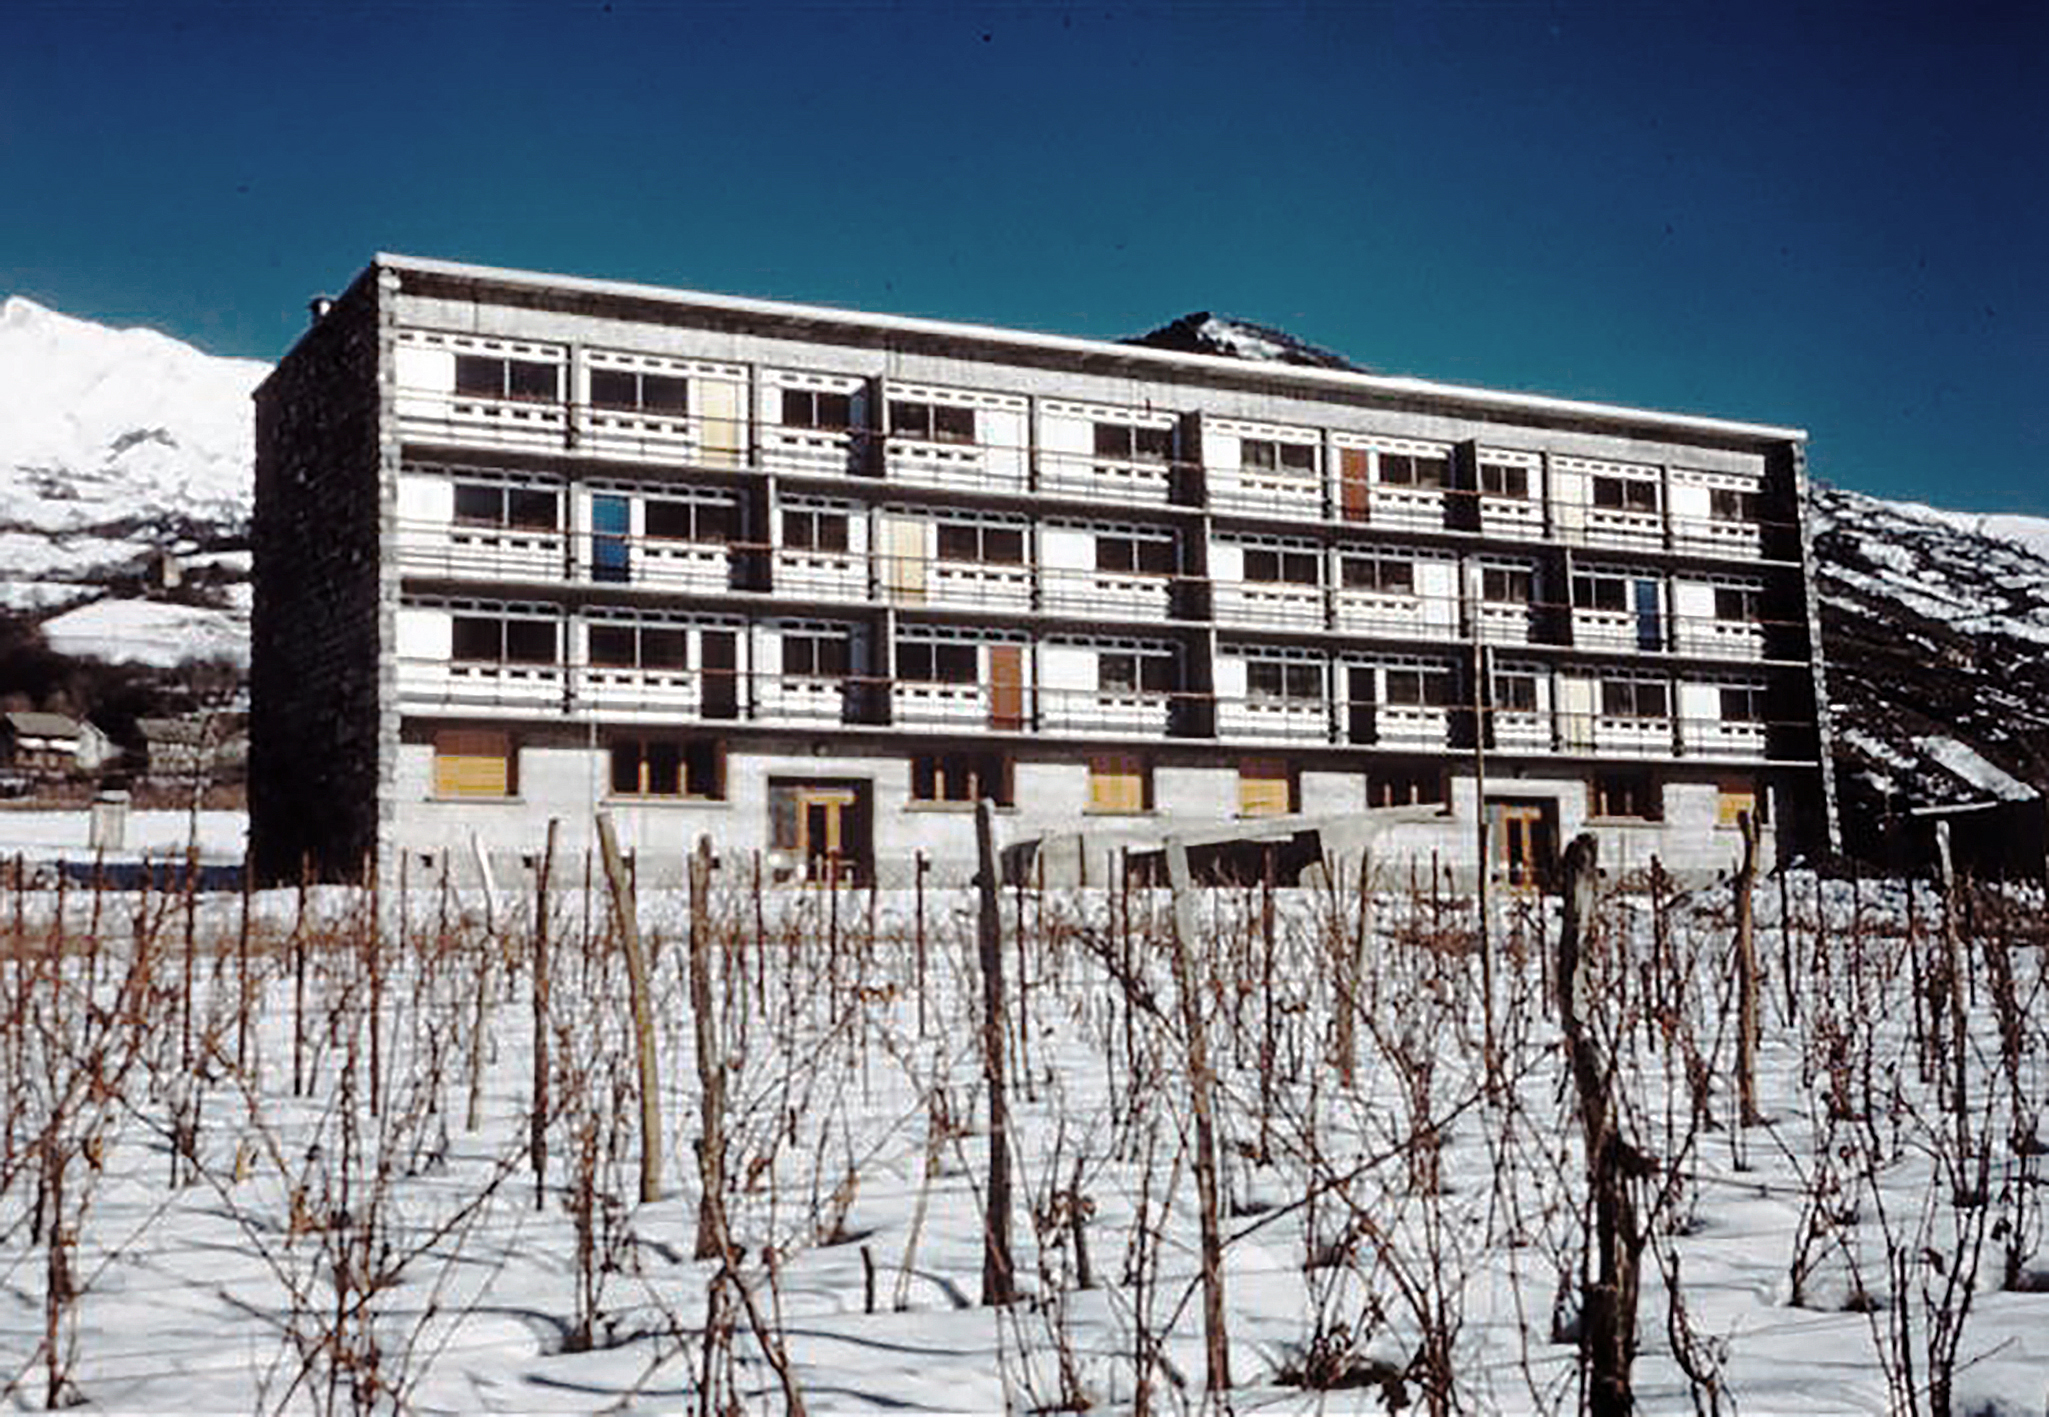 Apartment block, Saint-Jean-de-Maurienne, 1954 (architect M. Blanc).